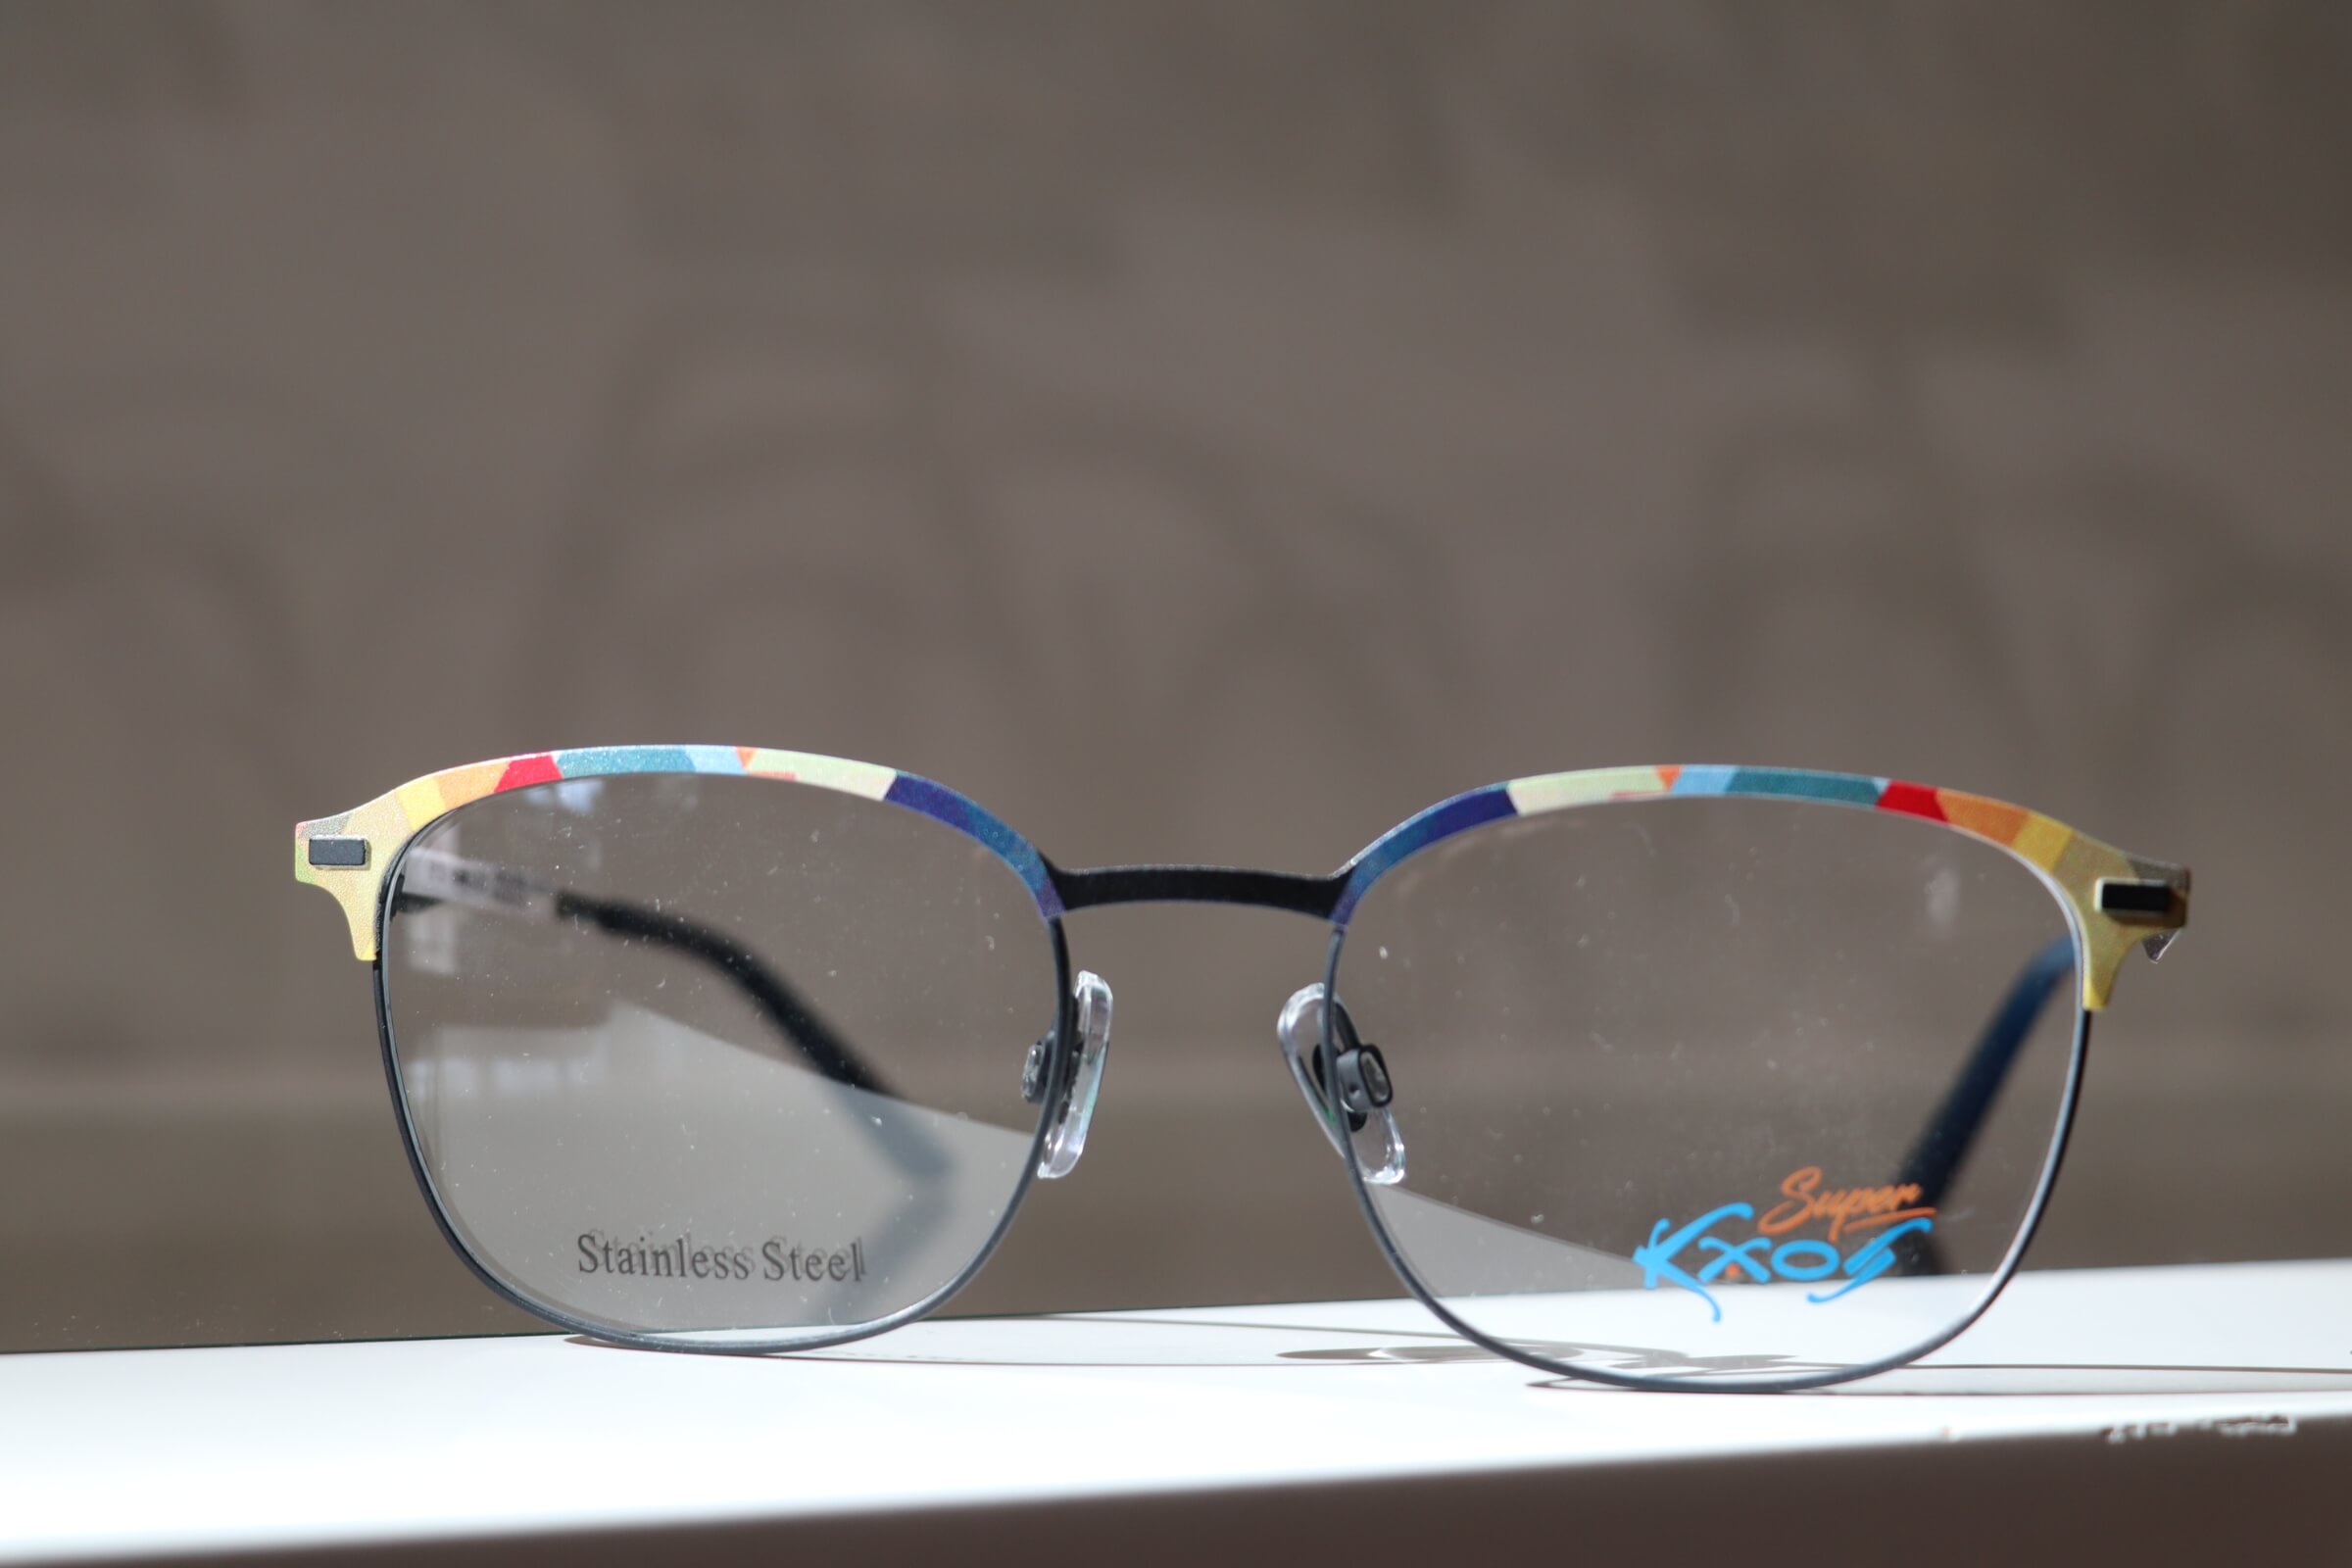 Kaos-Brille mit verschiedenen Blautönen und Orangeakzenten